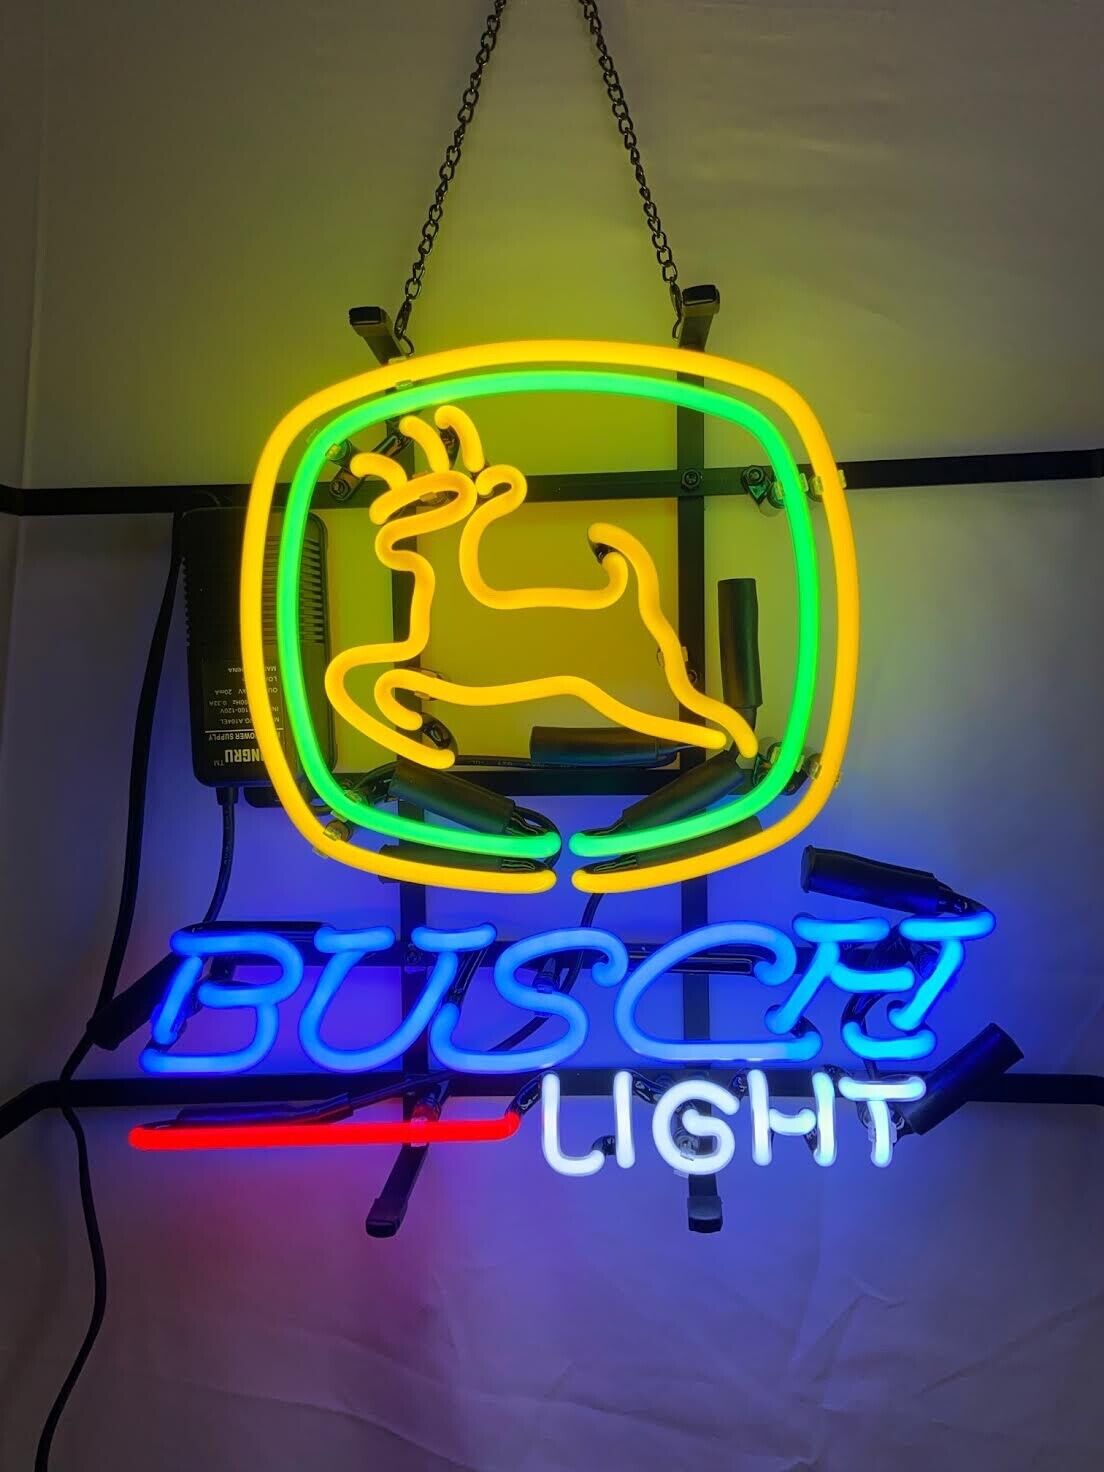 St. Louis Cardinals 20x16 Neon Sign Bar Lamp Beer Light Night